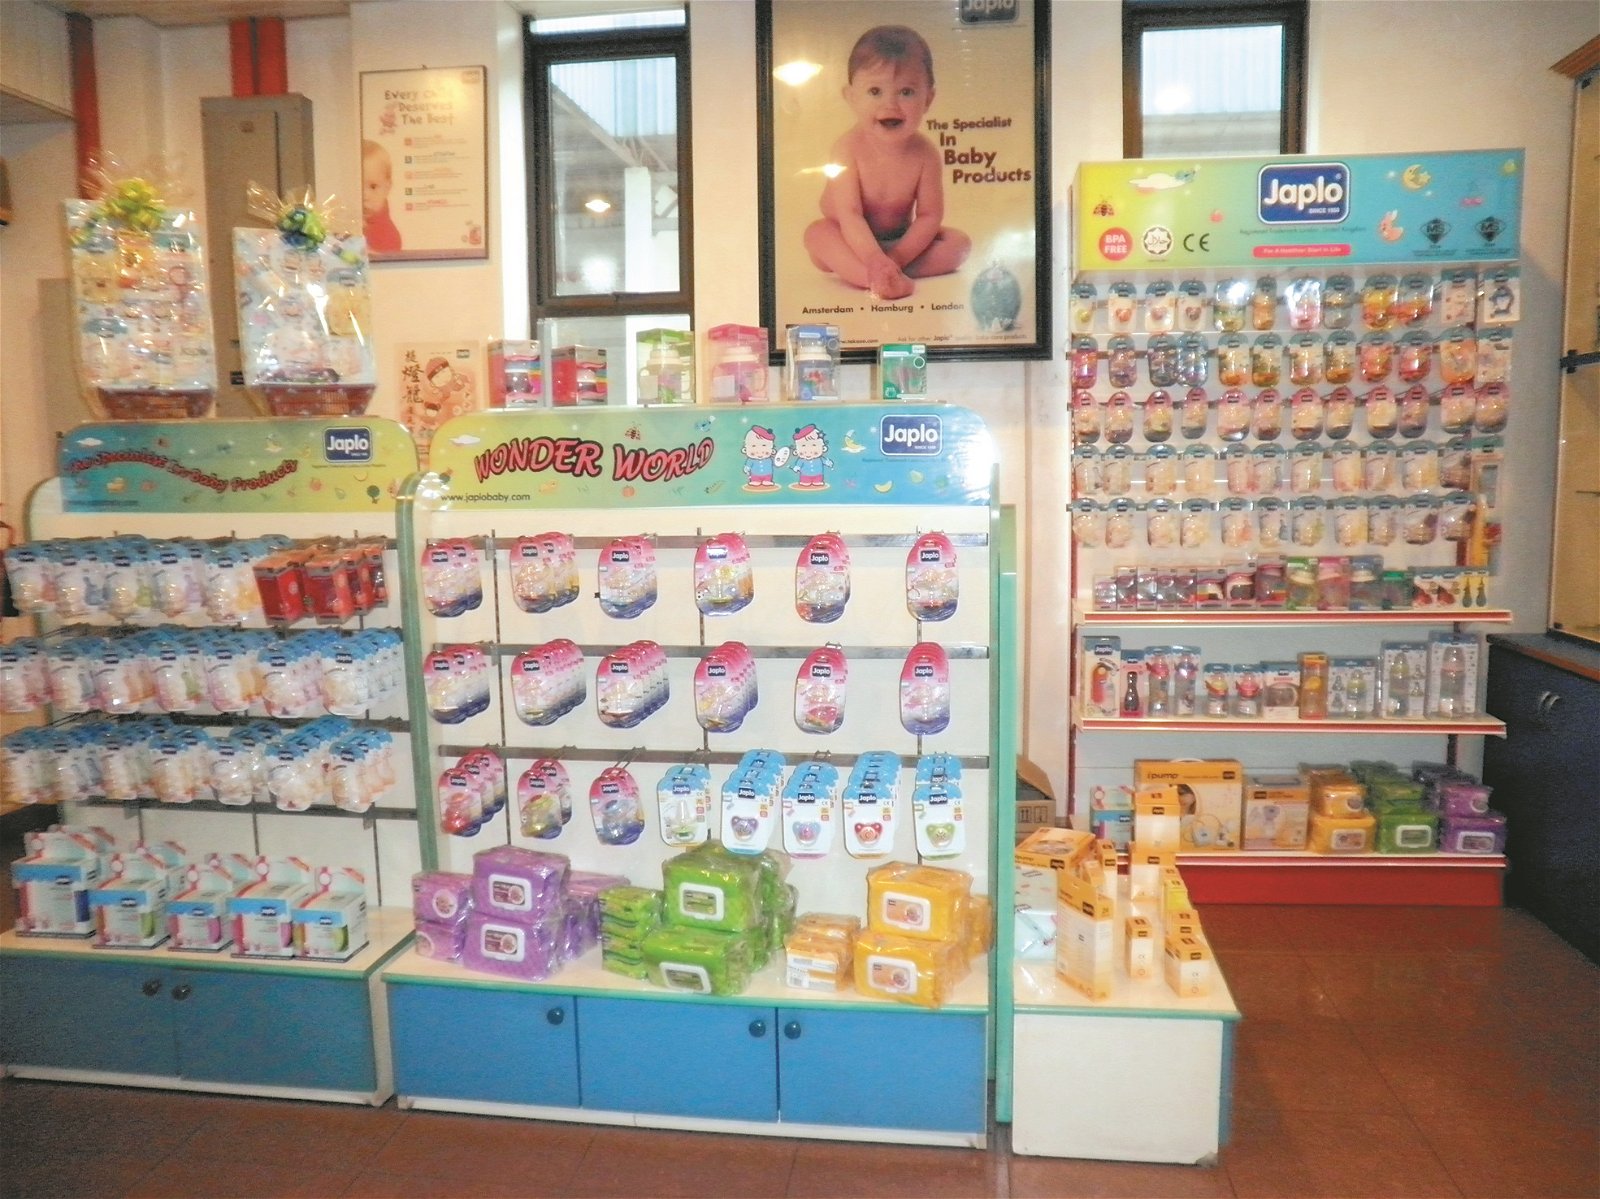 设在公司内的产品展示厅，可见迎合不同需求的各类婴儿用品。